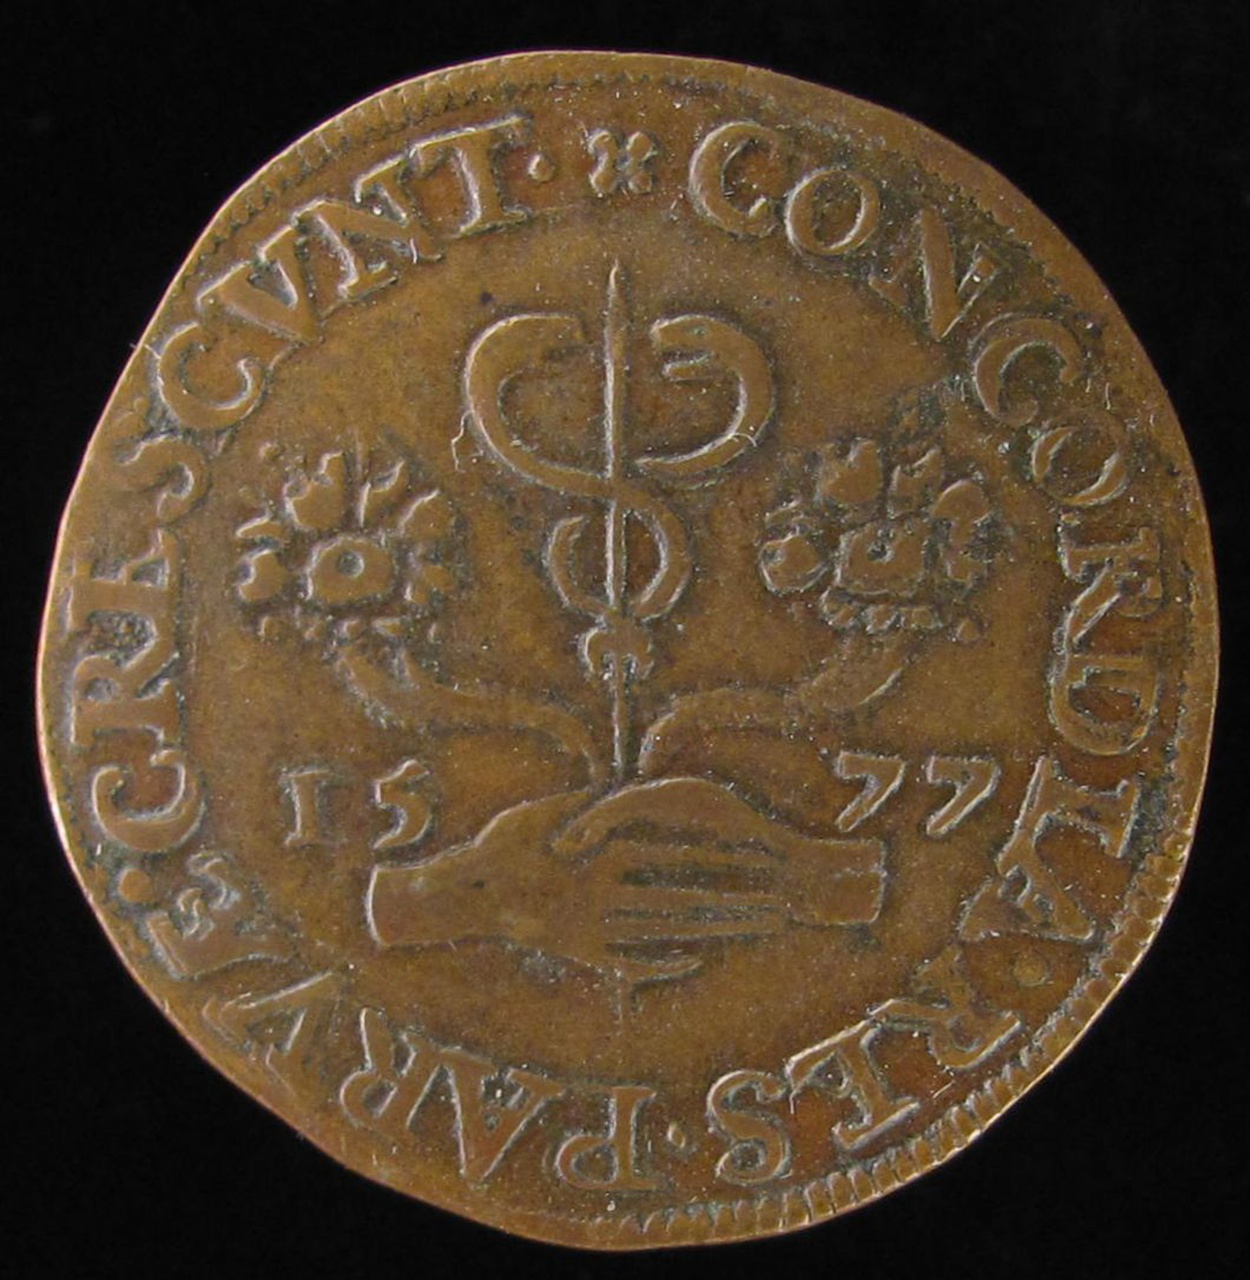 Legpenning van de rekenkamer van de stad Brussel, 1577